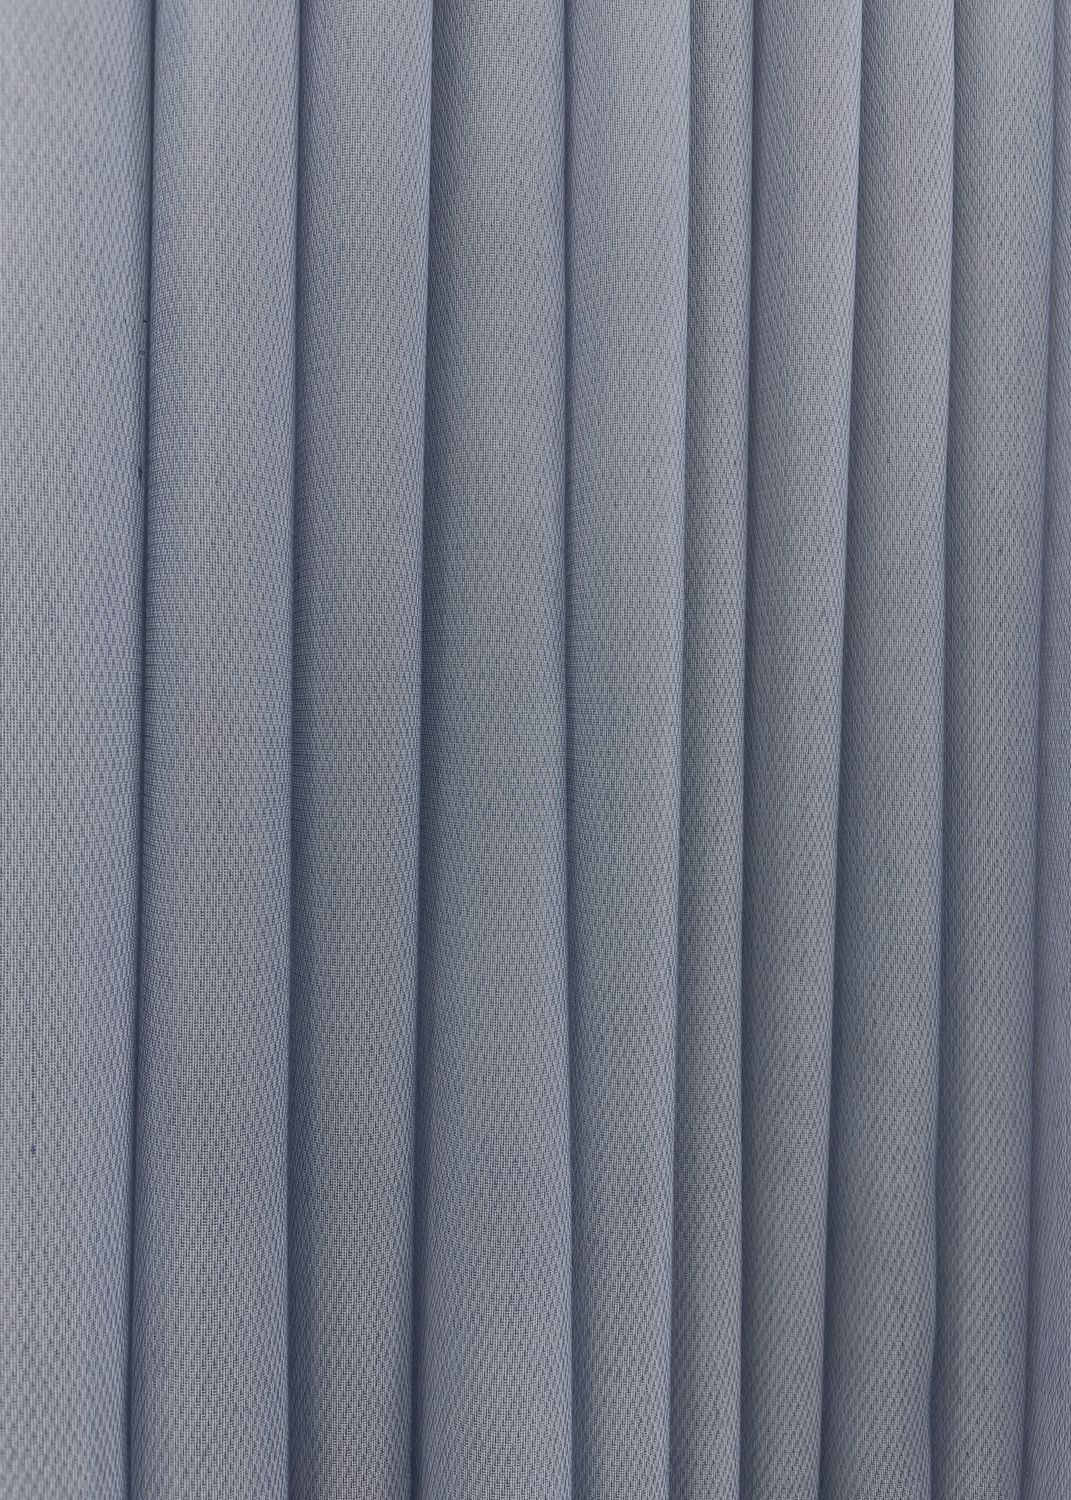 Тюль "Fortuna", однотонна Довжина 2,9м колір сіро-блакитний 1316т, Тюль на метраж, Без кріплення, тканина на відріз, Потрібну Вам ширину вказуйте при покупці. (Ширина набирається по довжині рулона.), 2,9 м.